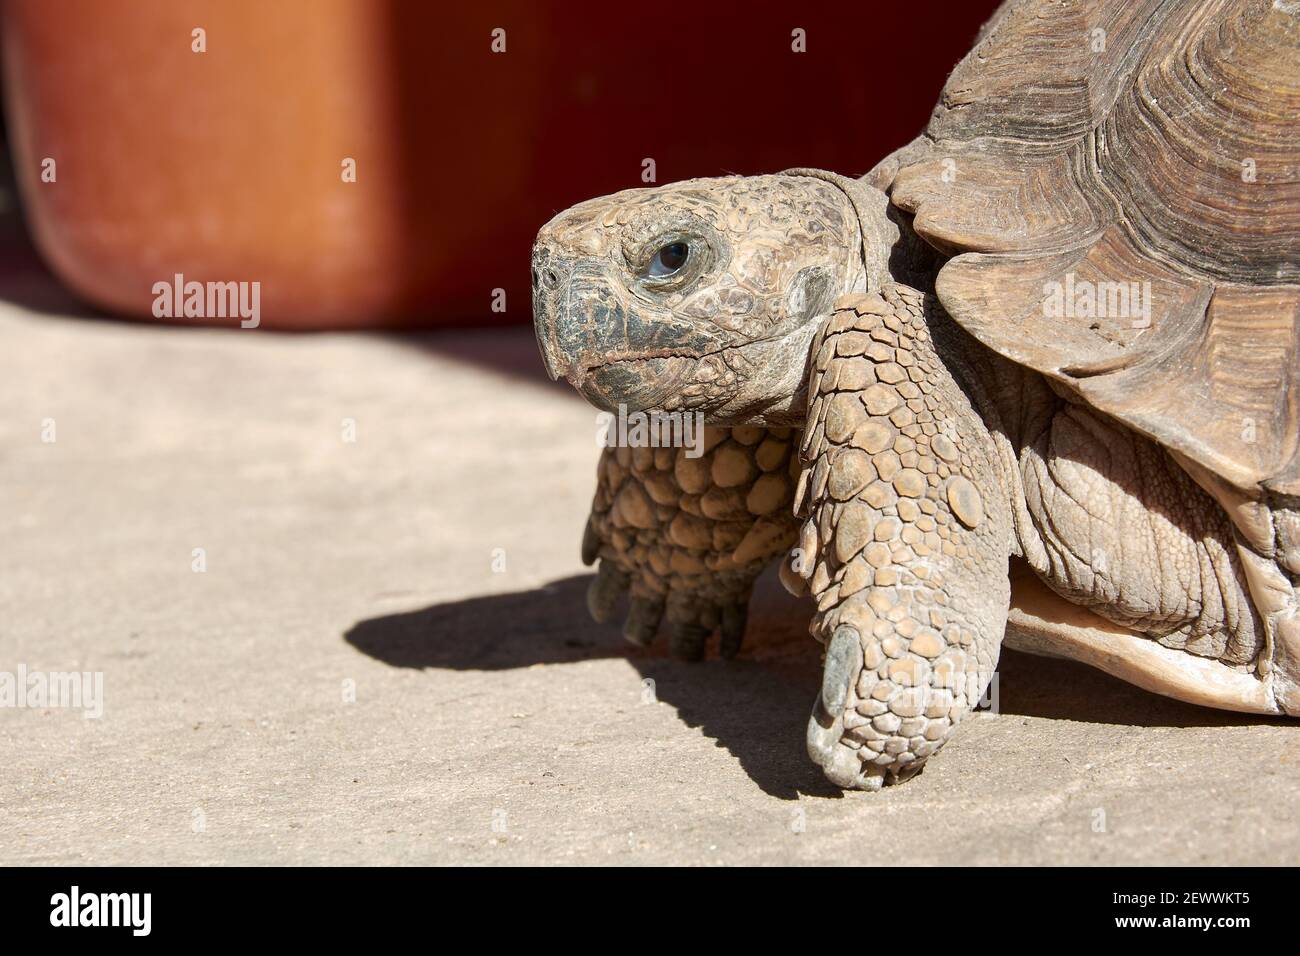 Nahaufnahme der Landschildkröte, die auf die Kamera schaut, während sie im Hof eines Hauses steht. Stockfoto